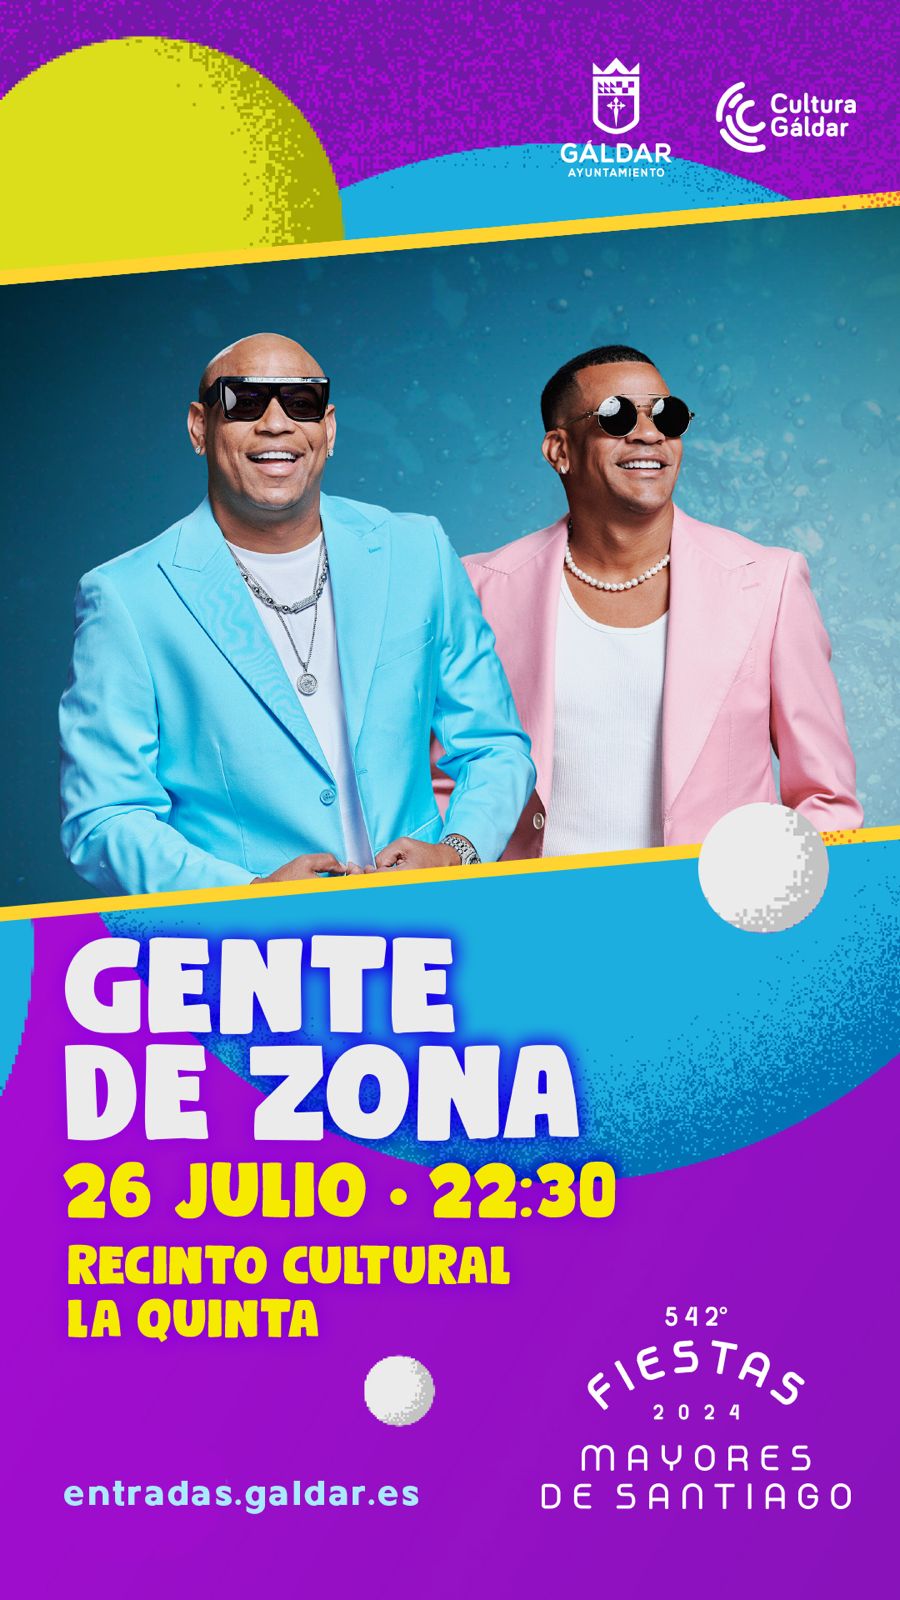 El dúo cubano Gente de Zona, una referencia internacional, actuará en La Quinta el 26 de julio